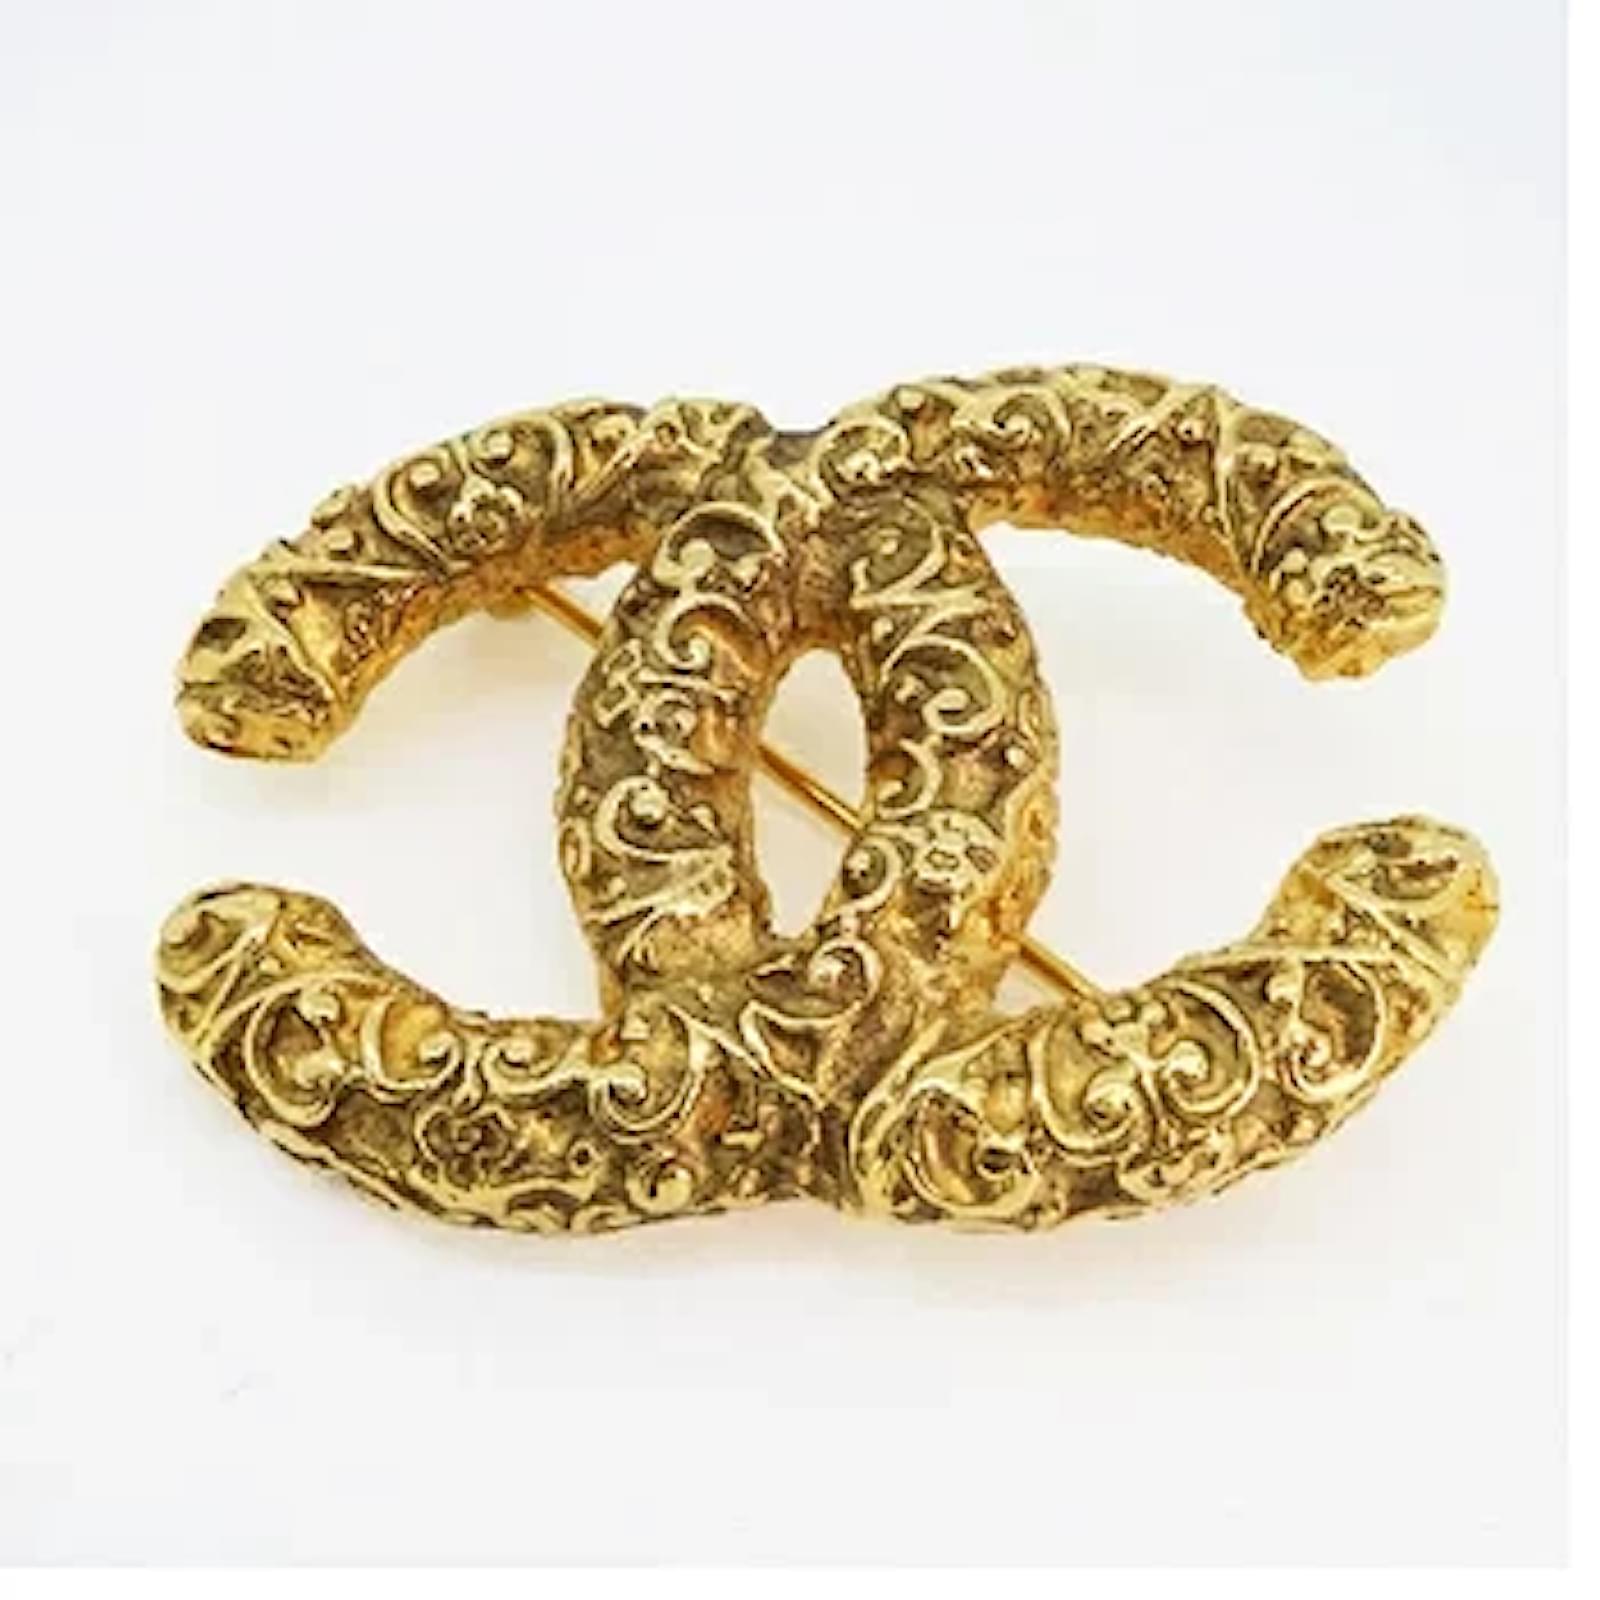 Chanel brooch in gold - Gem